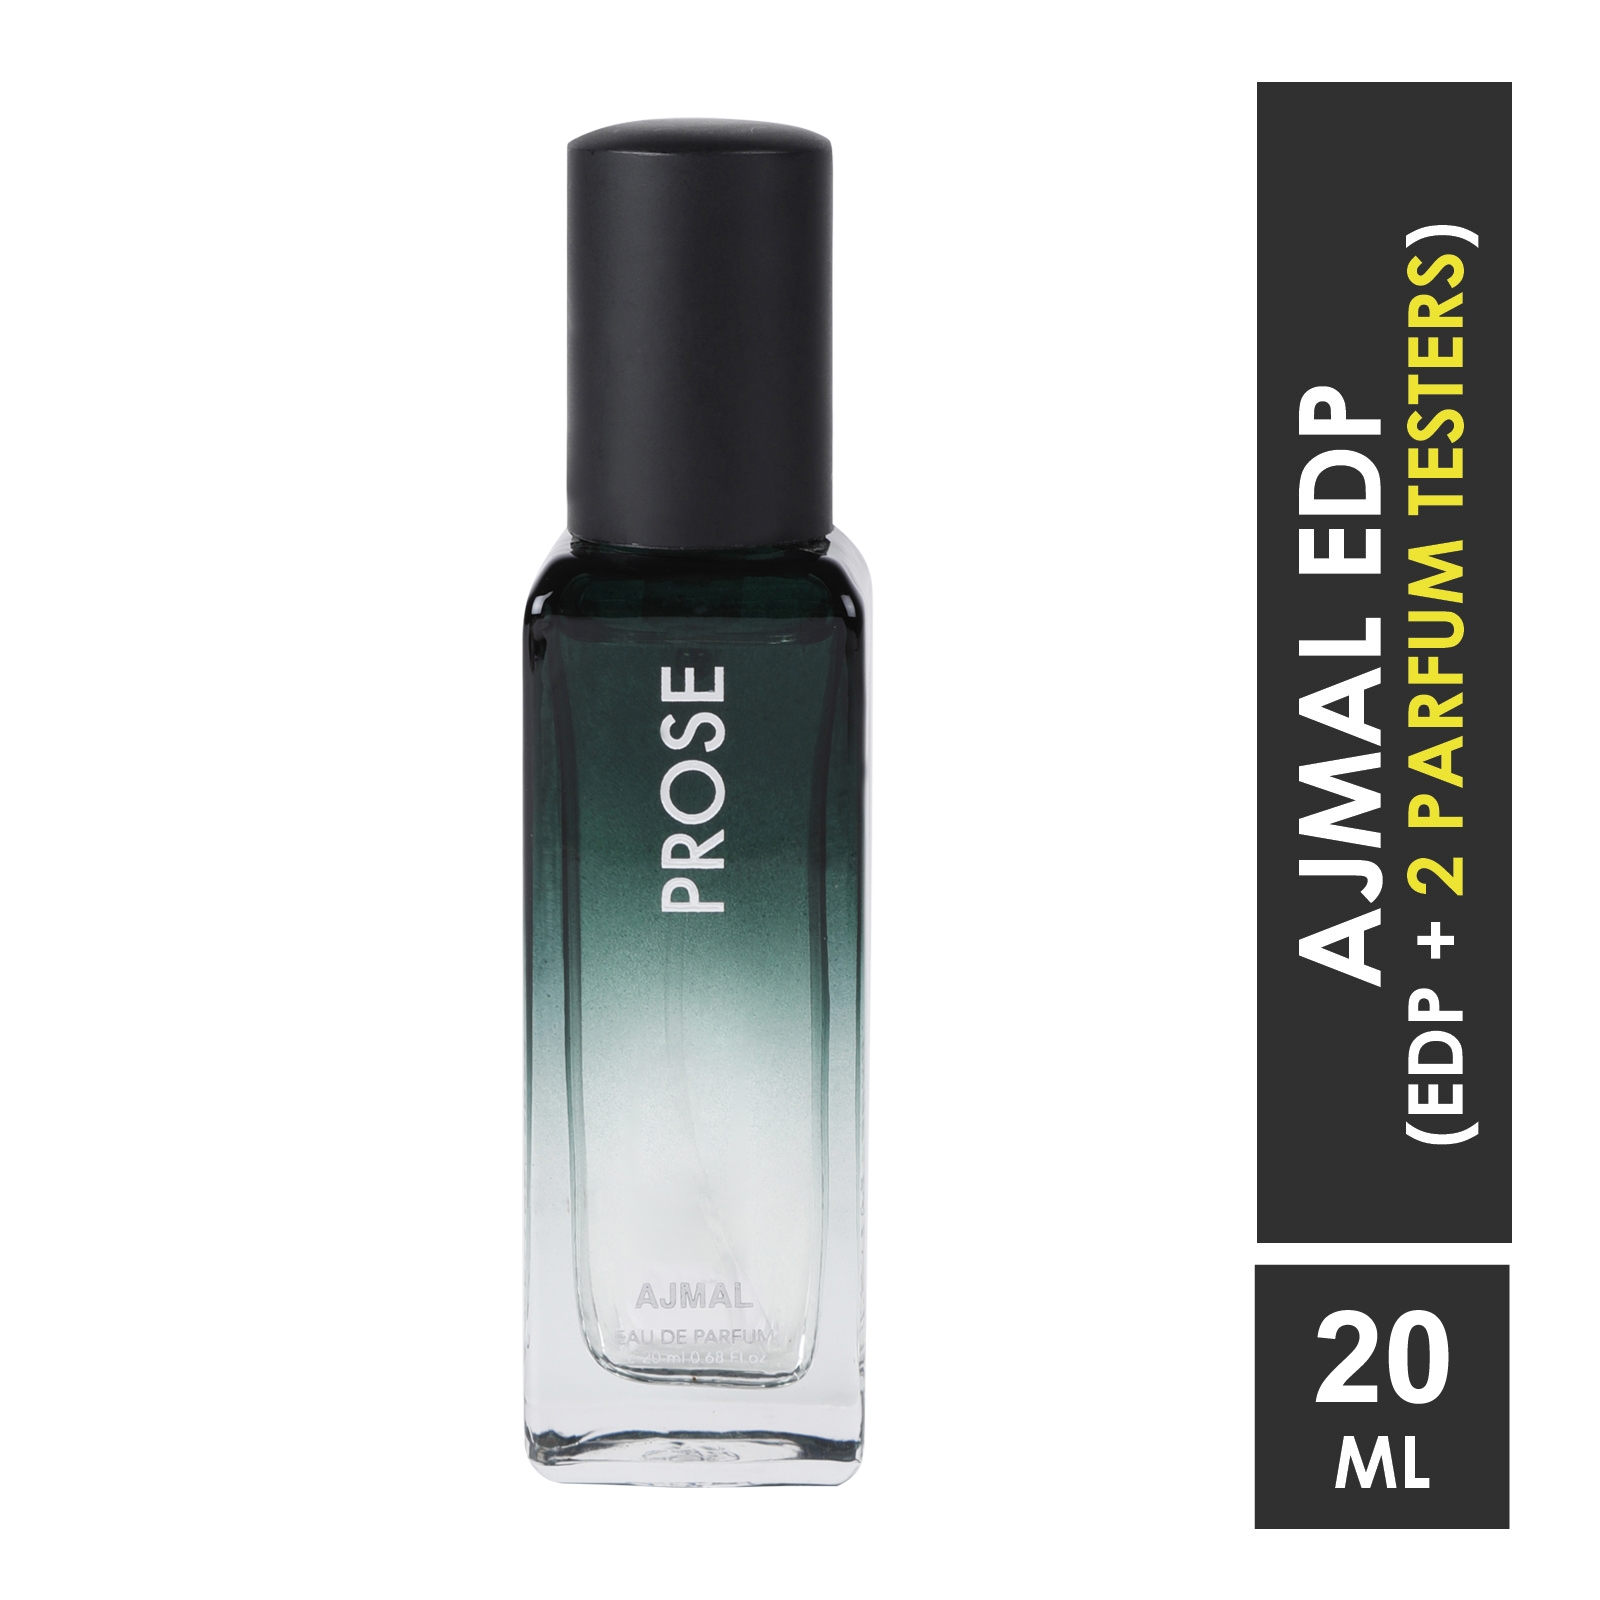 Ajmal | Ajmal Prose Eau De Parfum Fougere Perfume 20ML Casual Wear for Men + 2 Parfum Testers